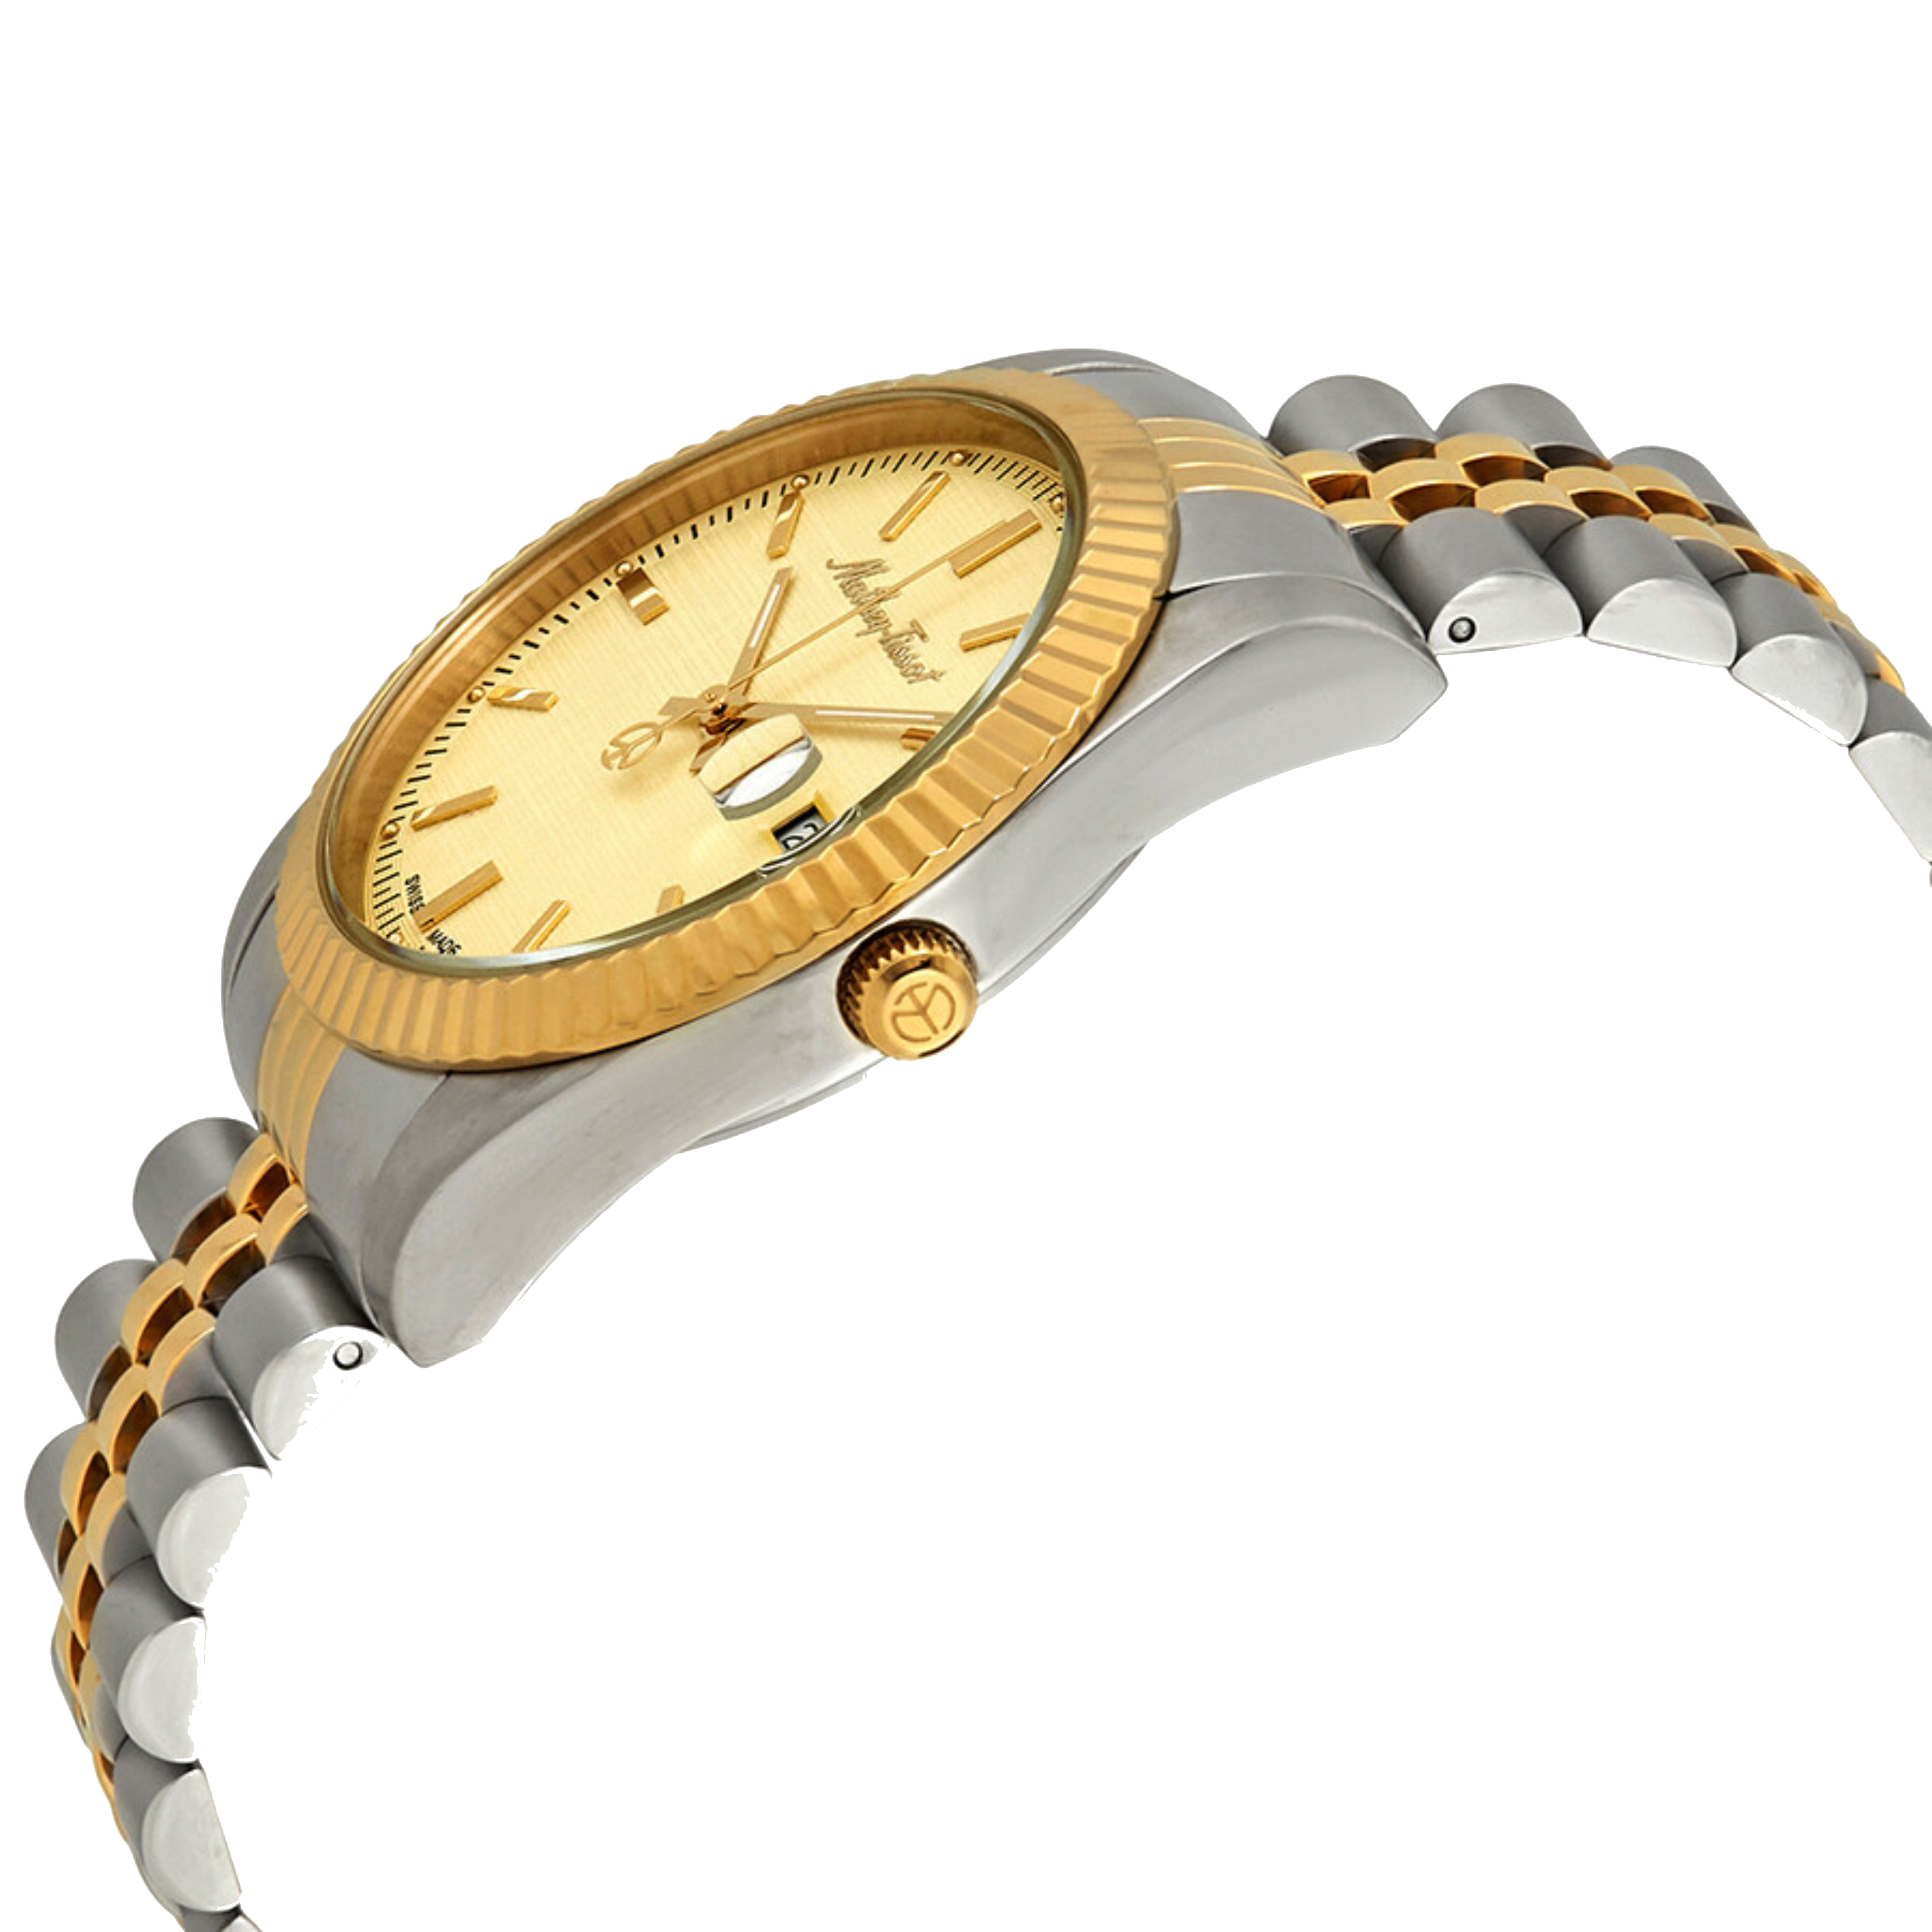 שעון יד לגבר Mathey Tissot H810BDI 40mm צבע כסף/זהב/תאריך - אחריות לשנתיים